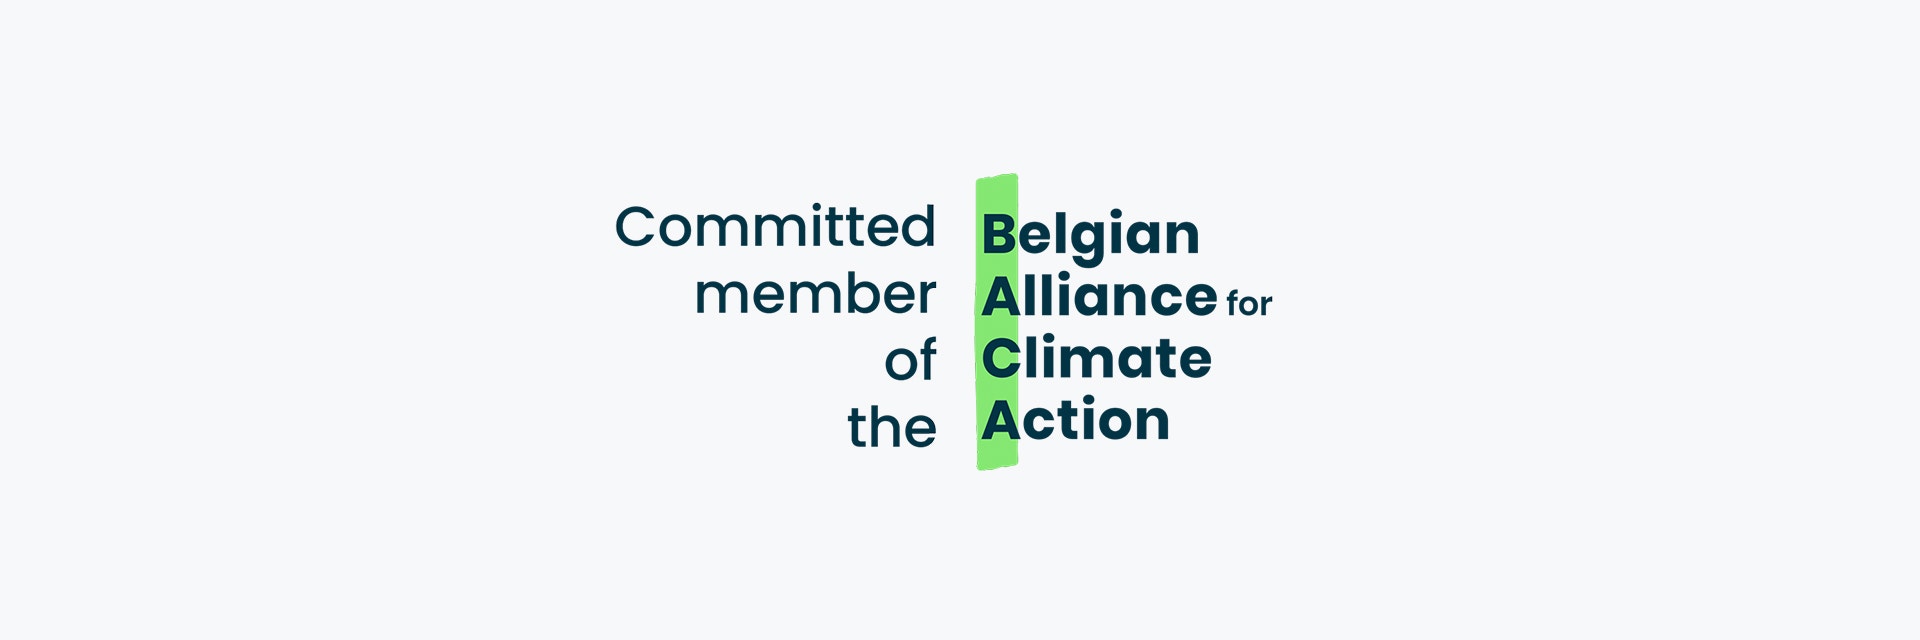 Logo de membre engagé de l'Alliance belge pour l'action climatique